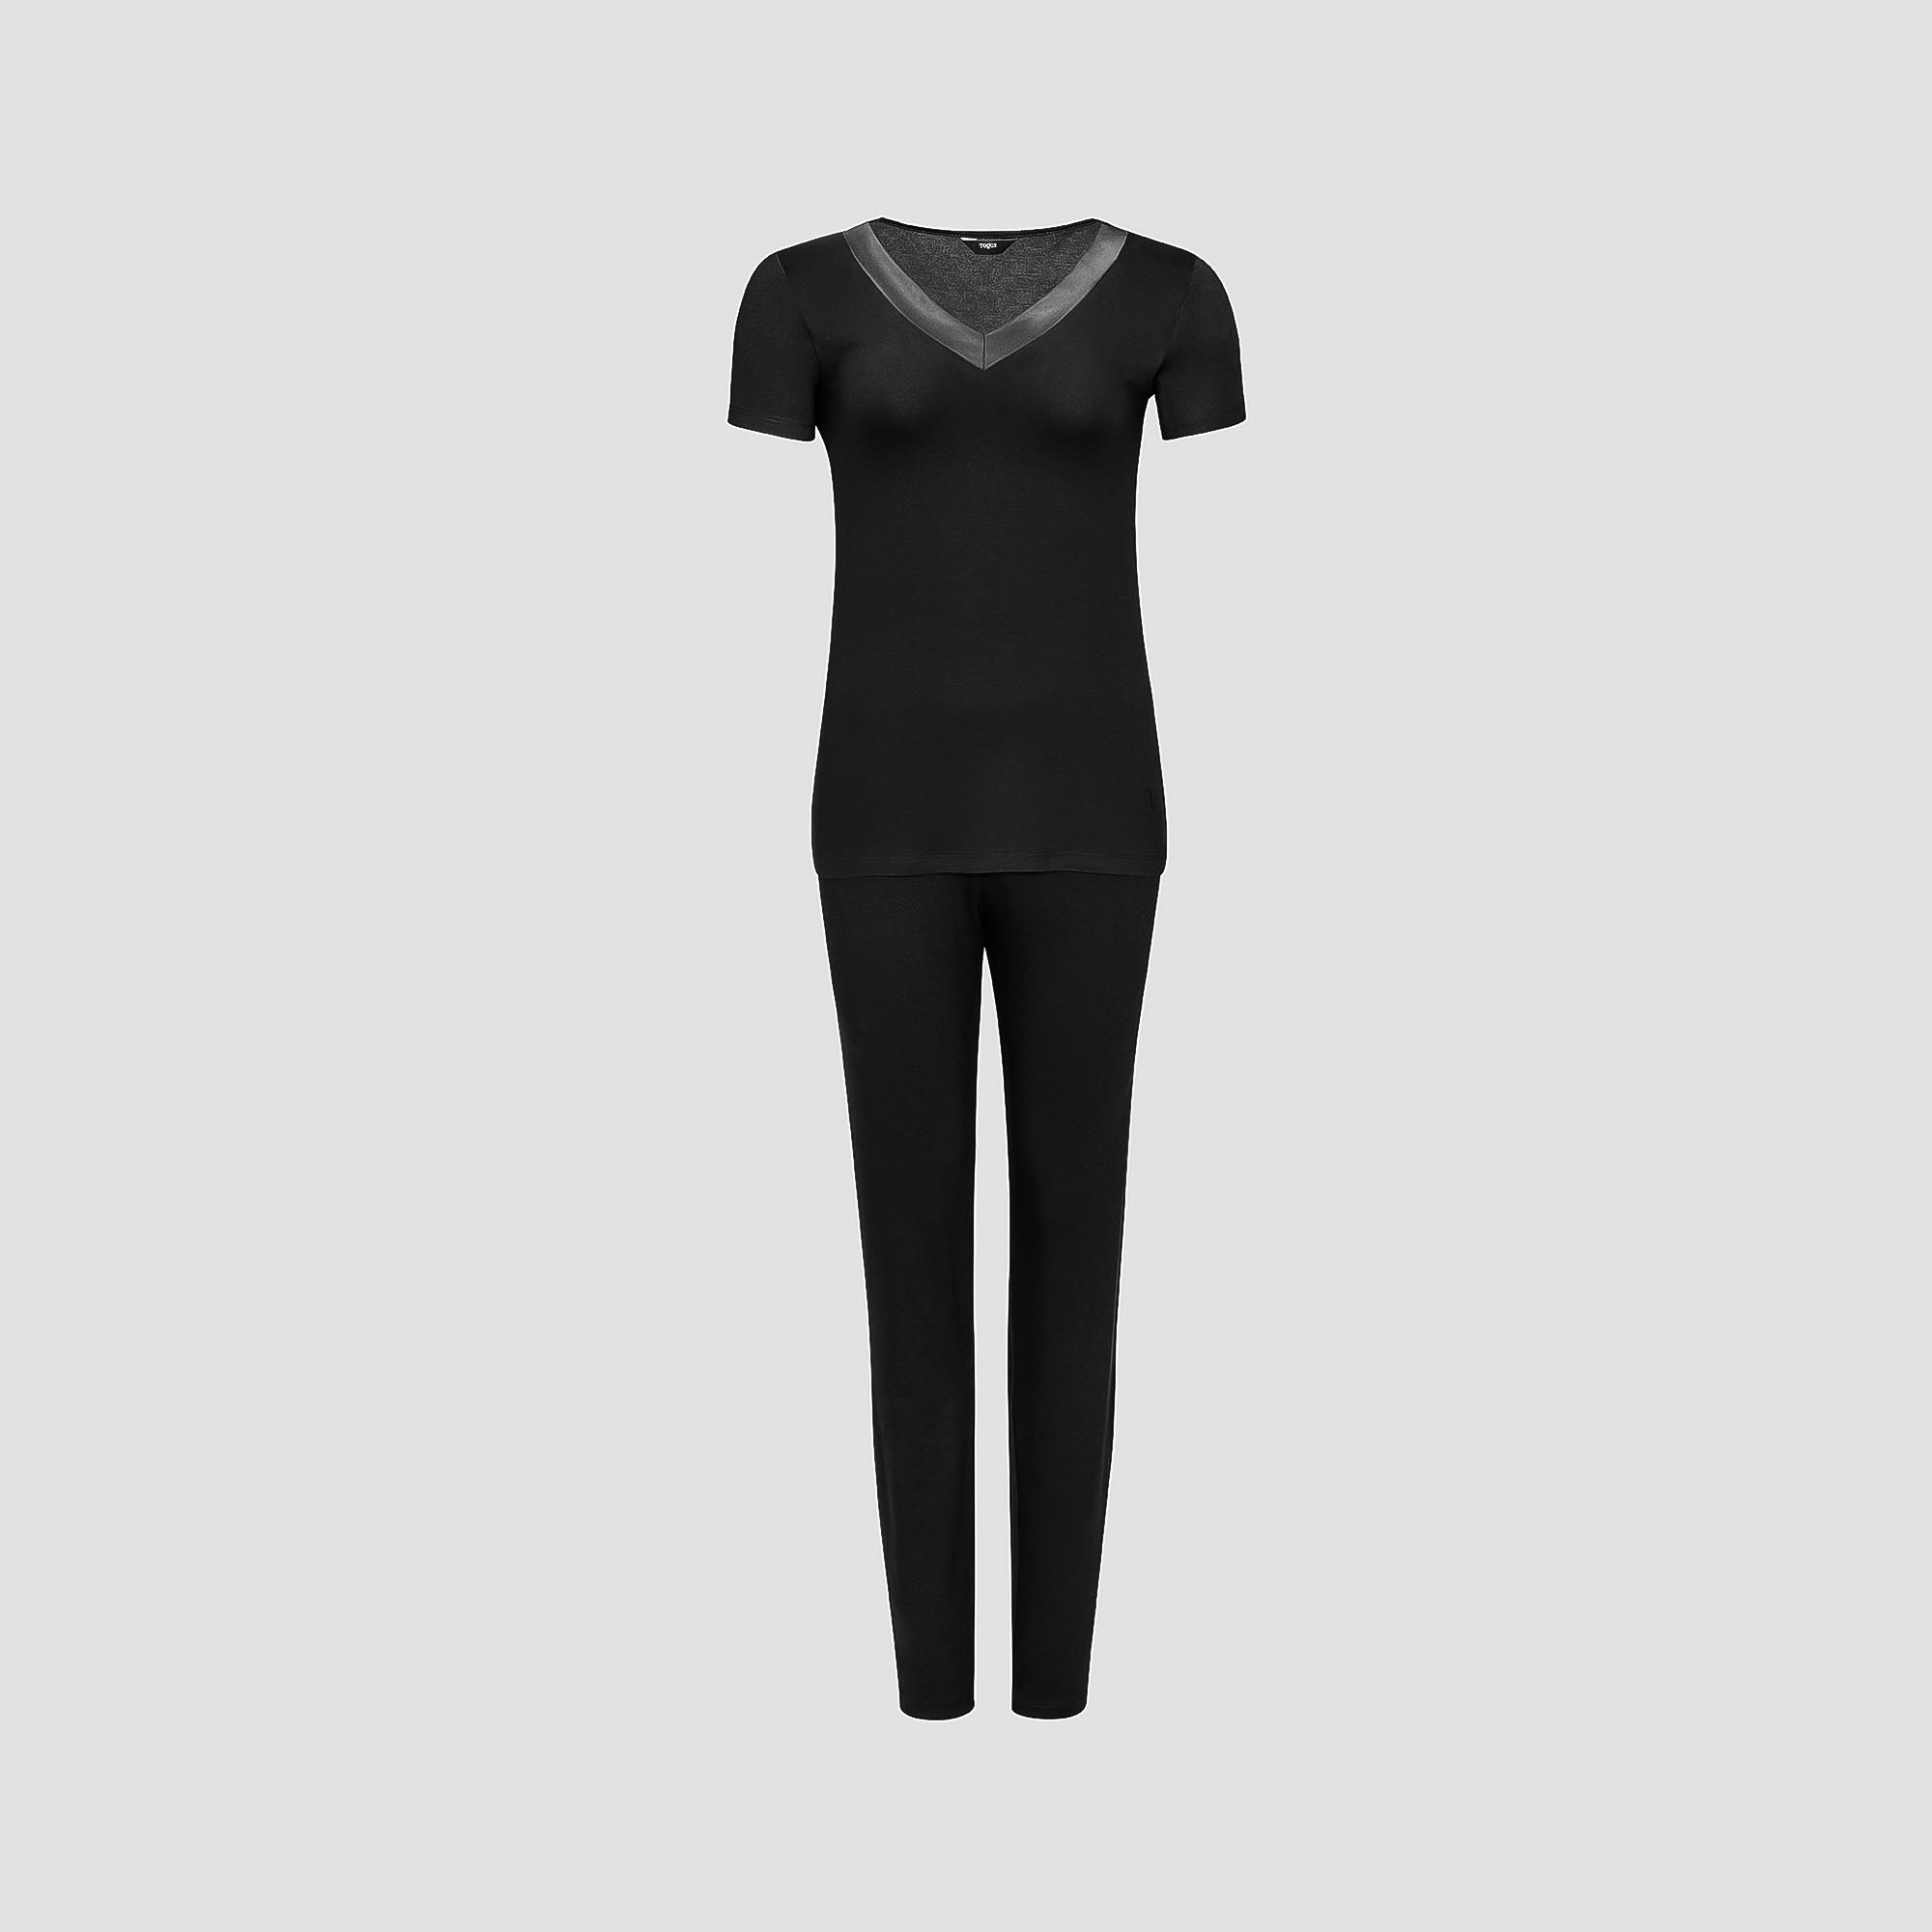 Пижама Togas Ингелла черная женская XL(50) 2 предмета пижама халат брюки